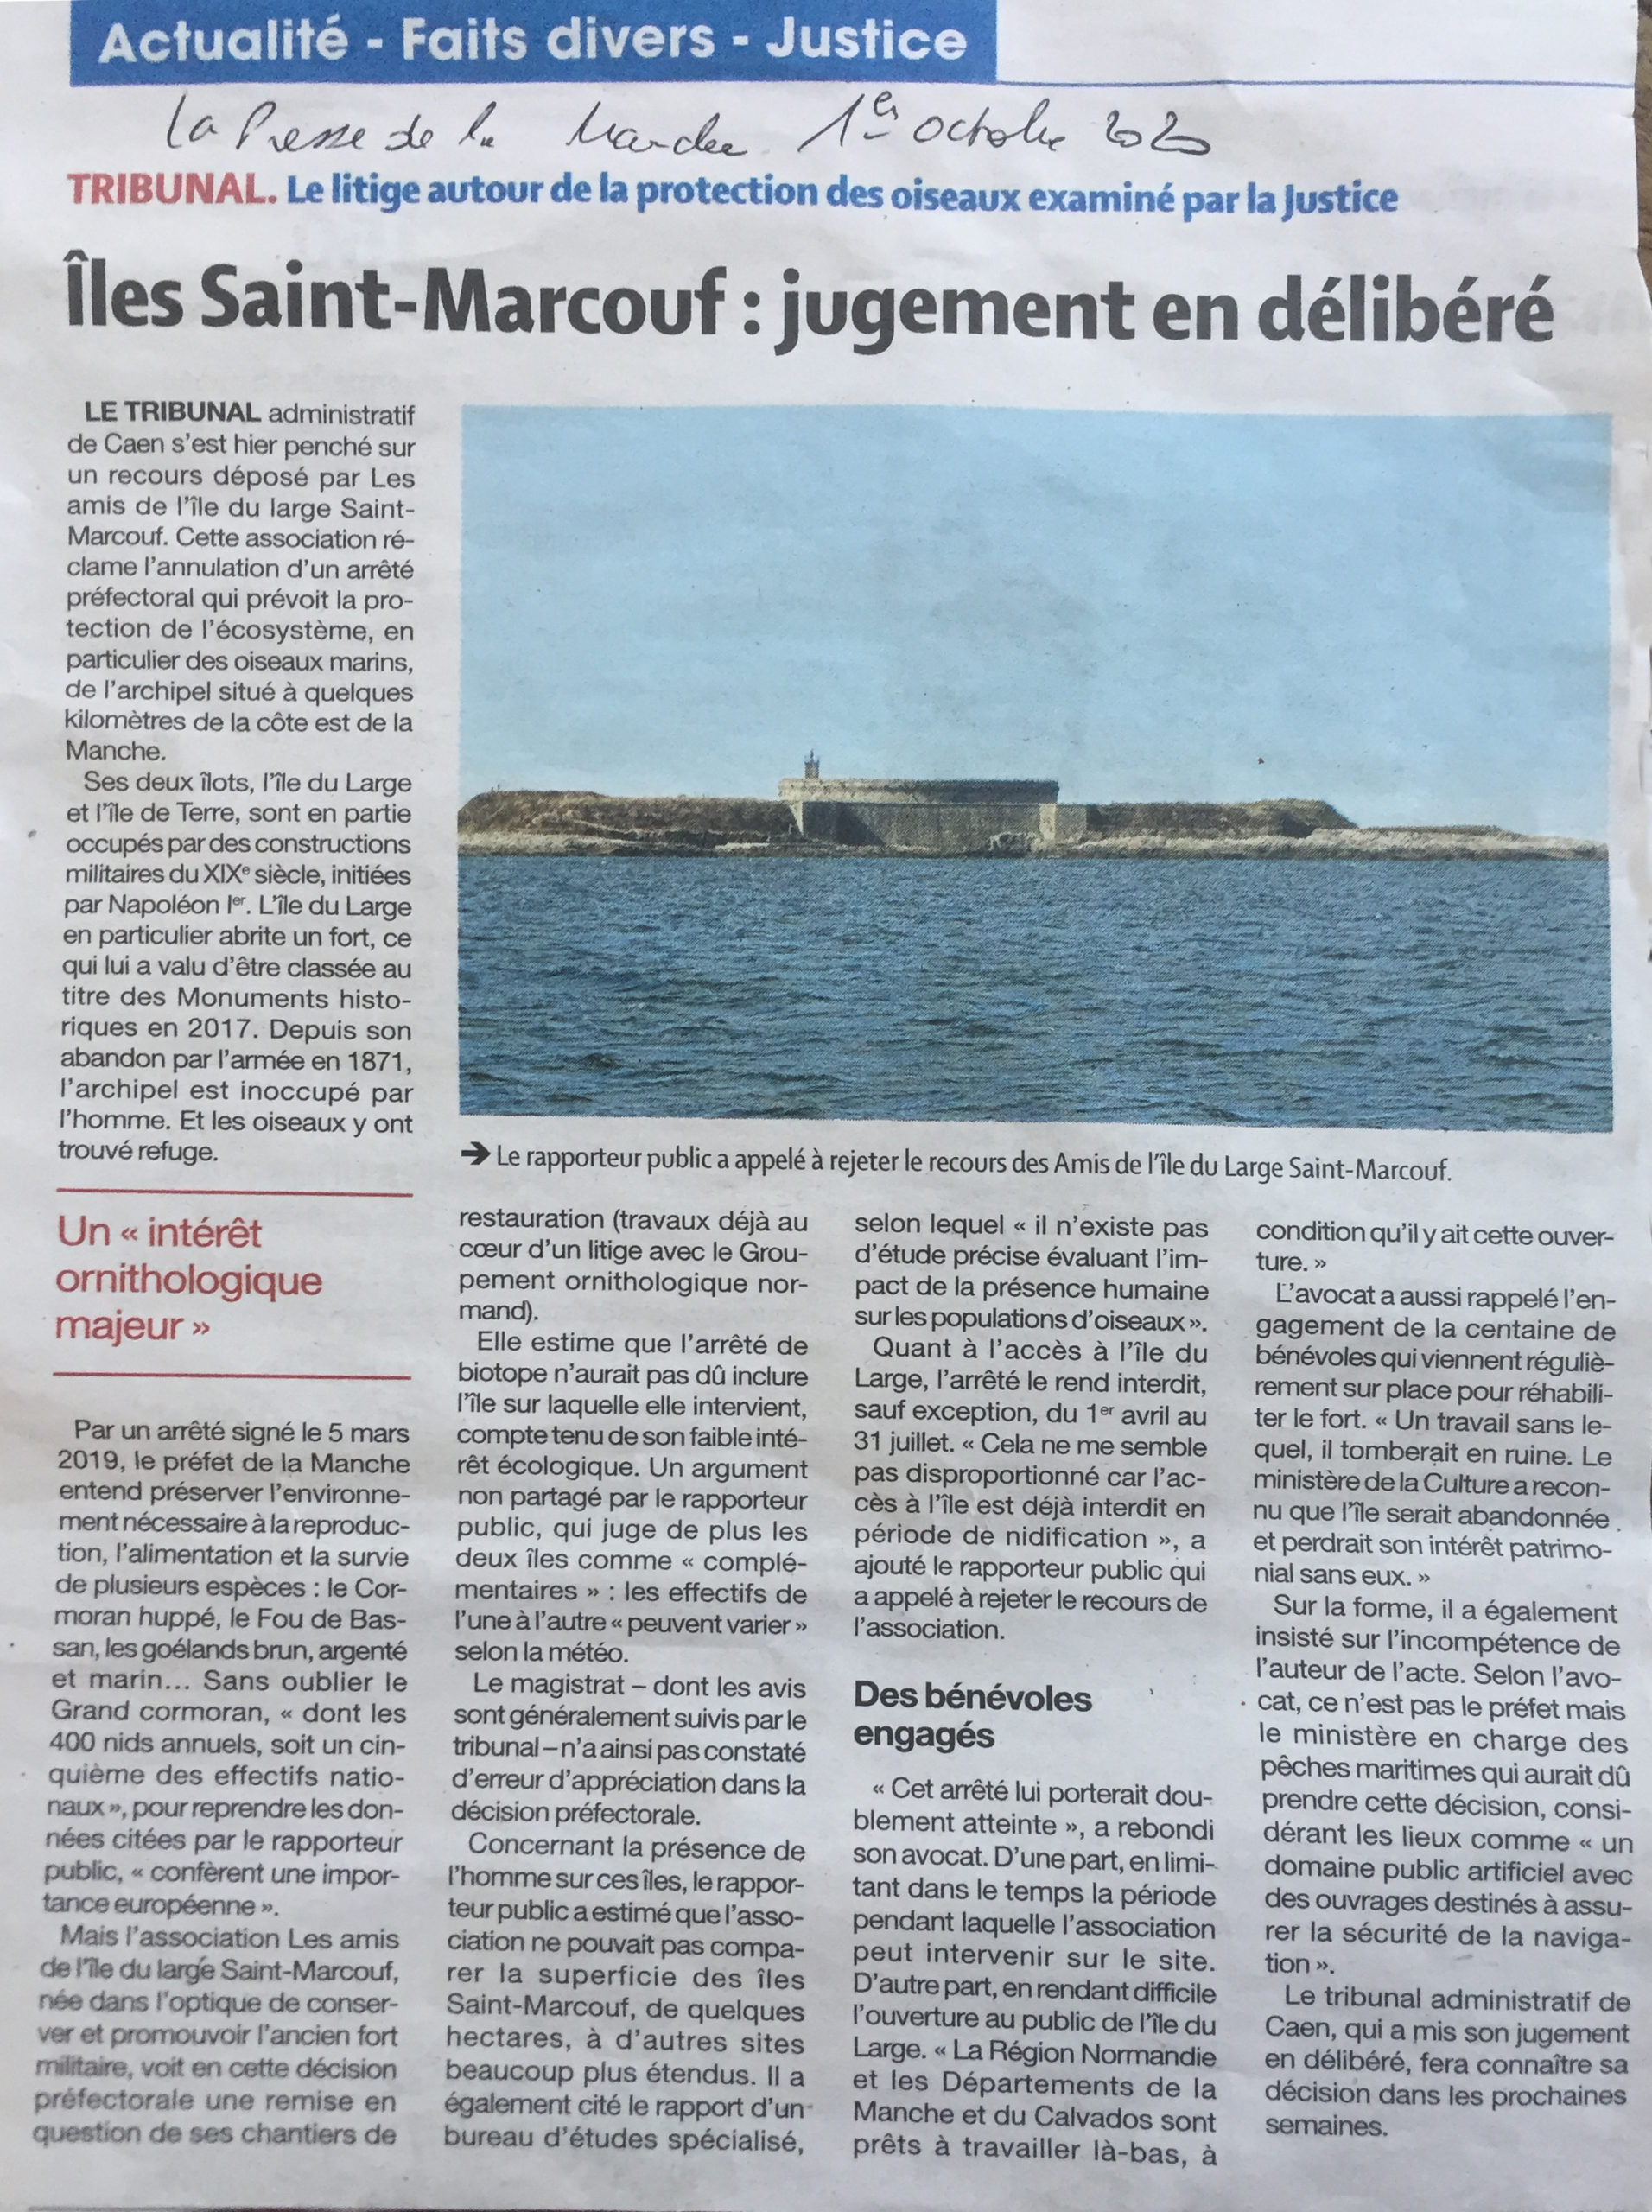 Ile Saint-Macouf : jugement en délibére : article de presse La presse de la Manche du 01/10/2020